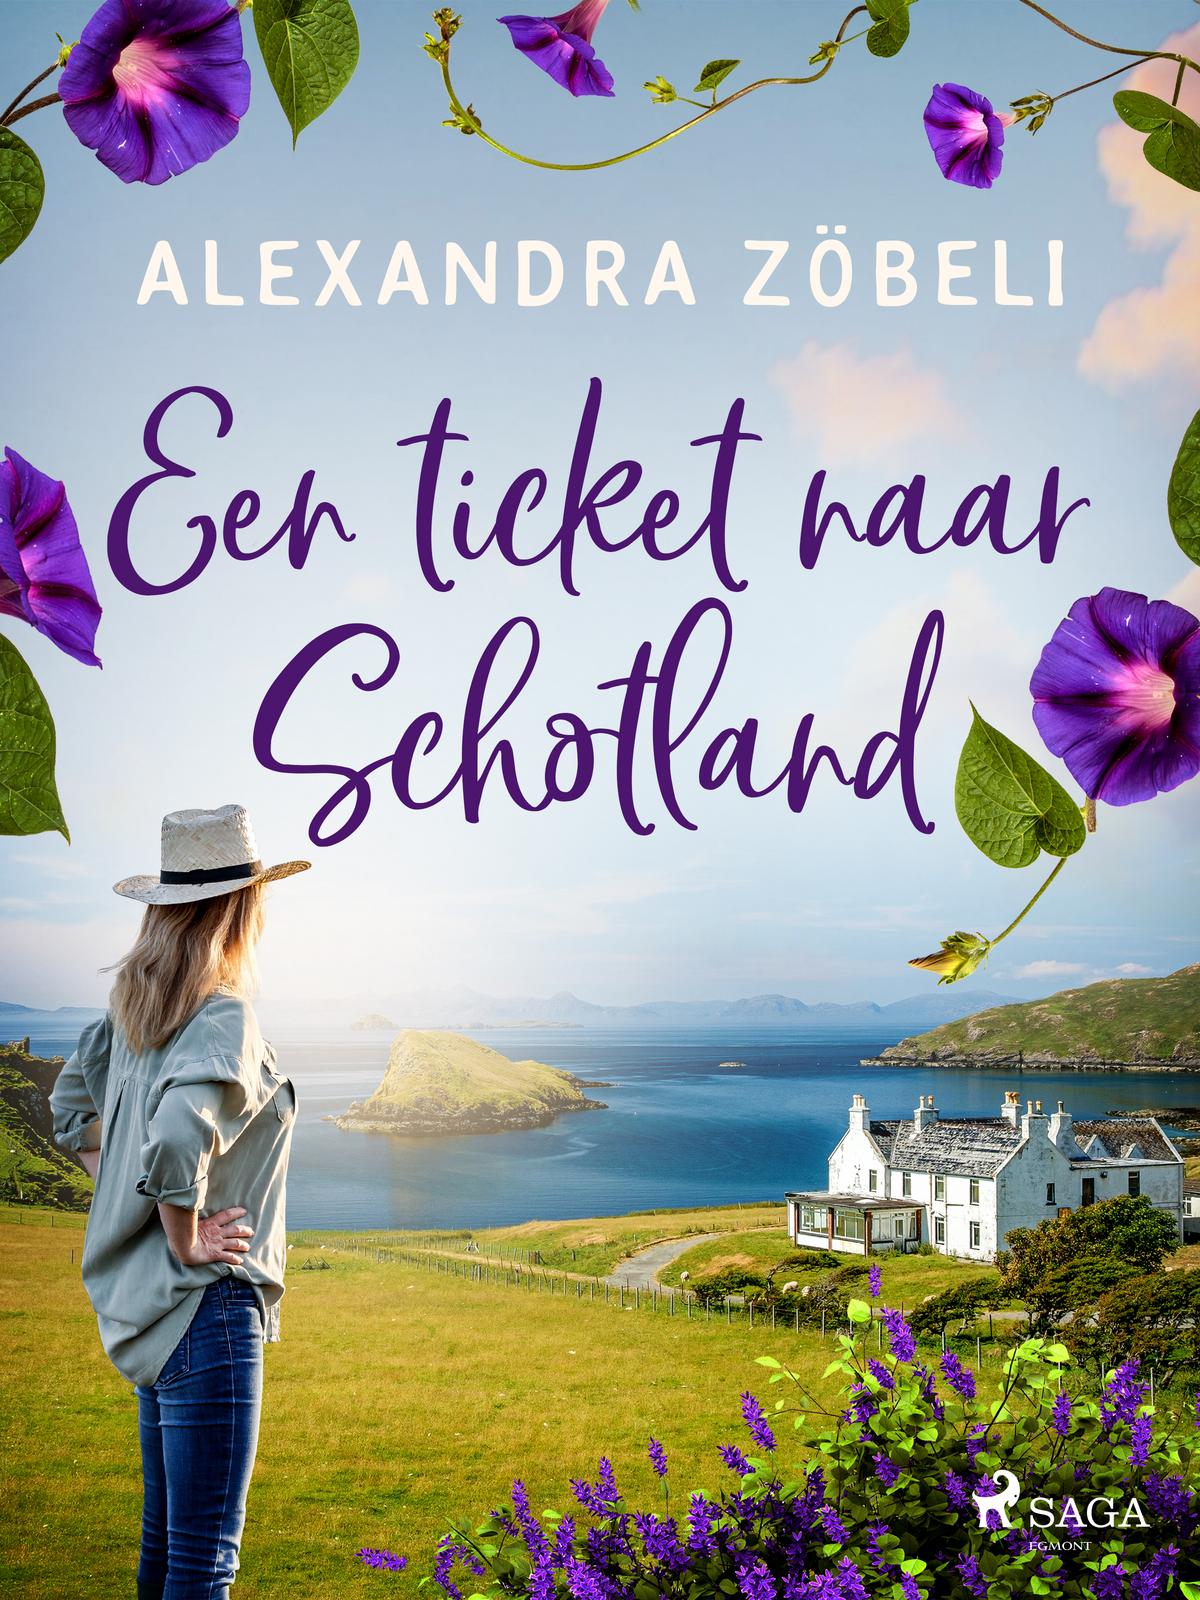 Zöbeli, Alexandra-ticket naar Schotland, Een